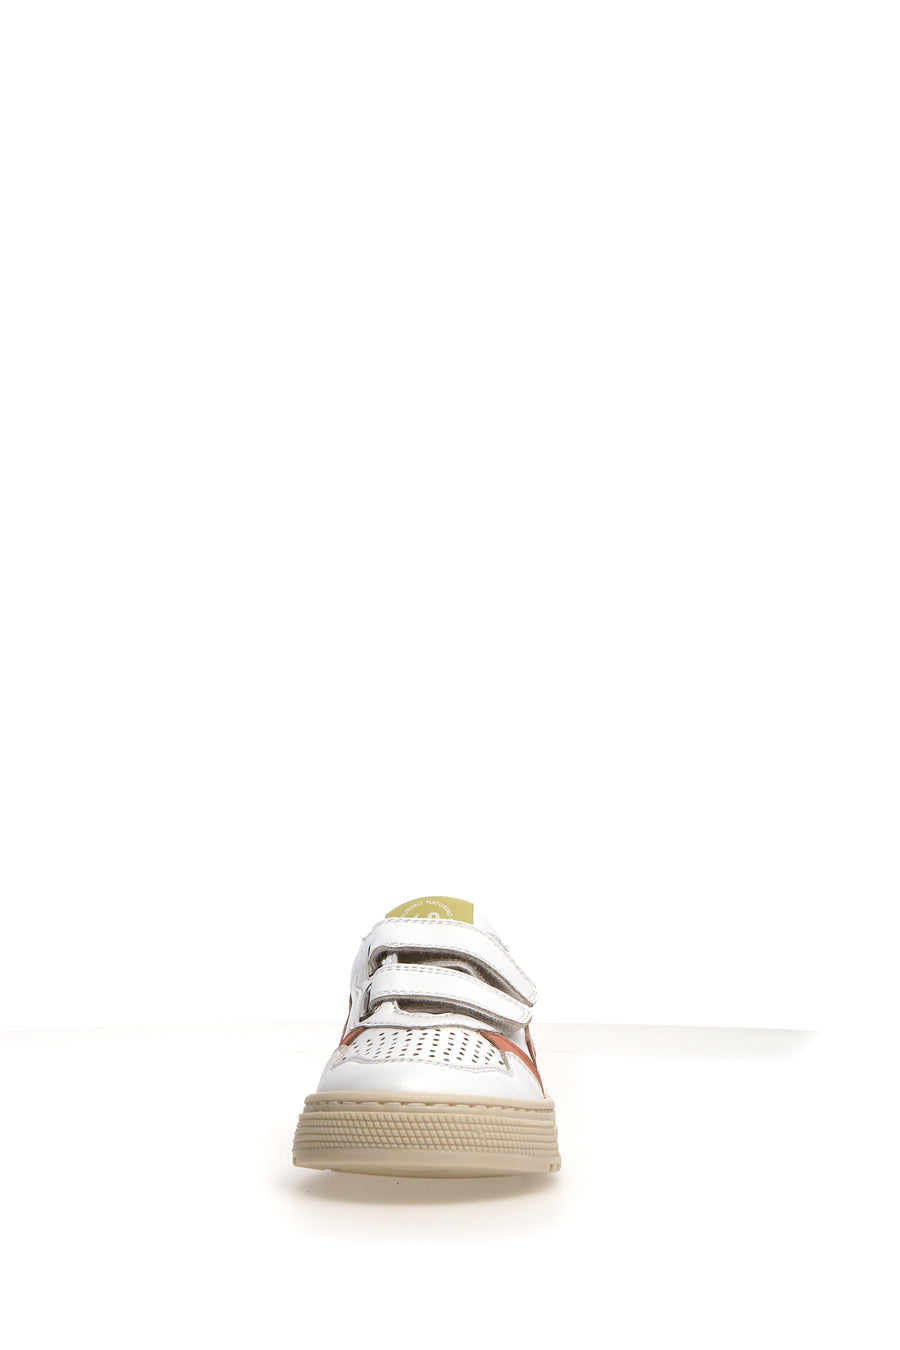 Naturino Girl's & Boy's Ceonia Sneakers - White/Peach/Fresia